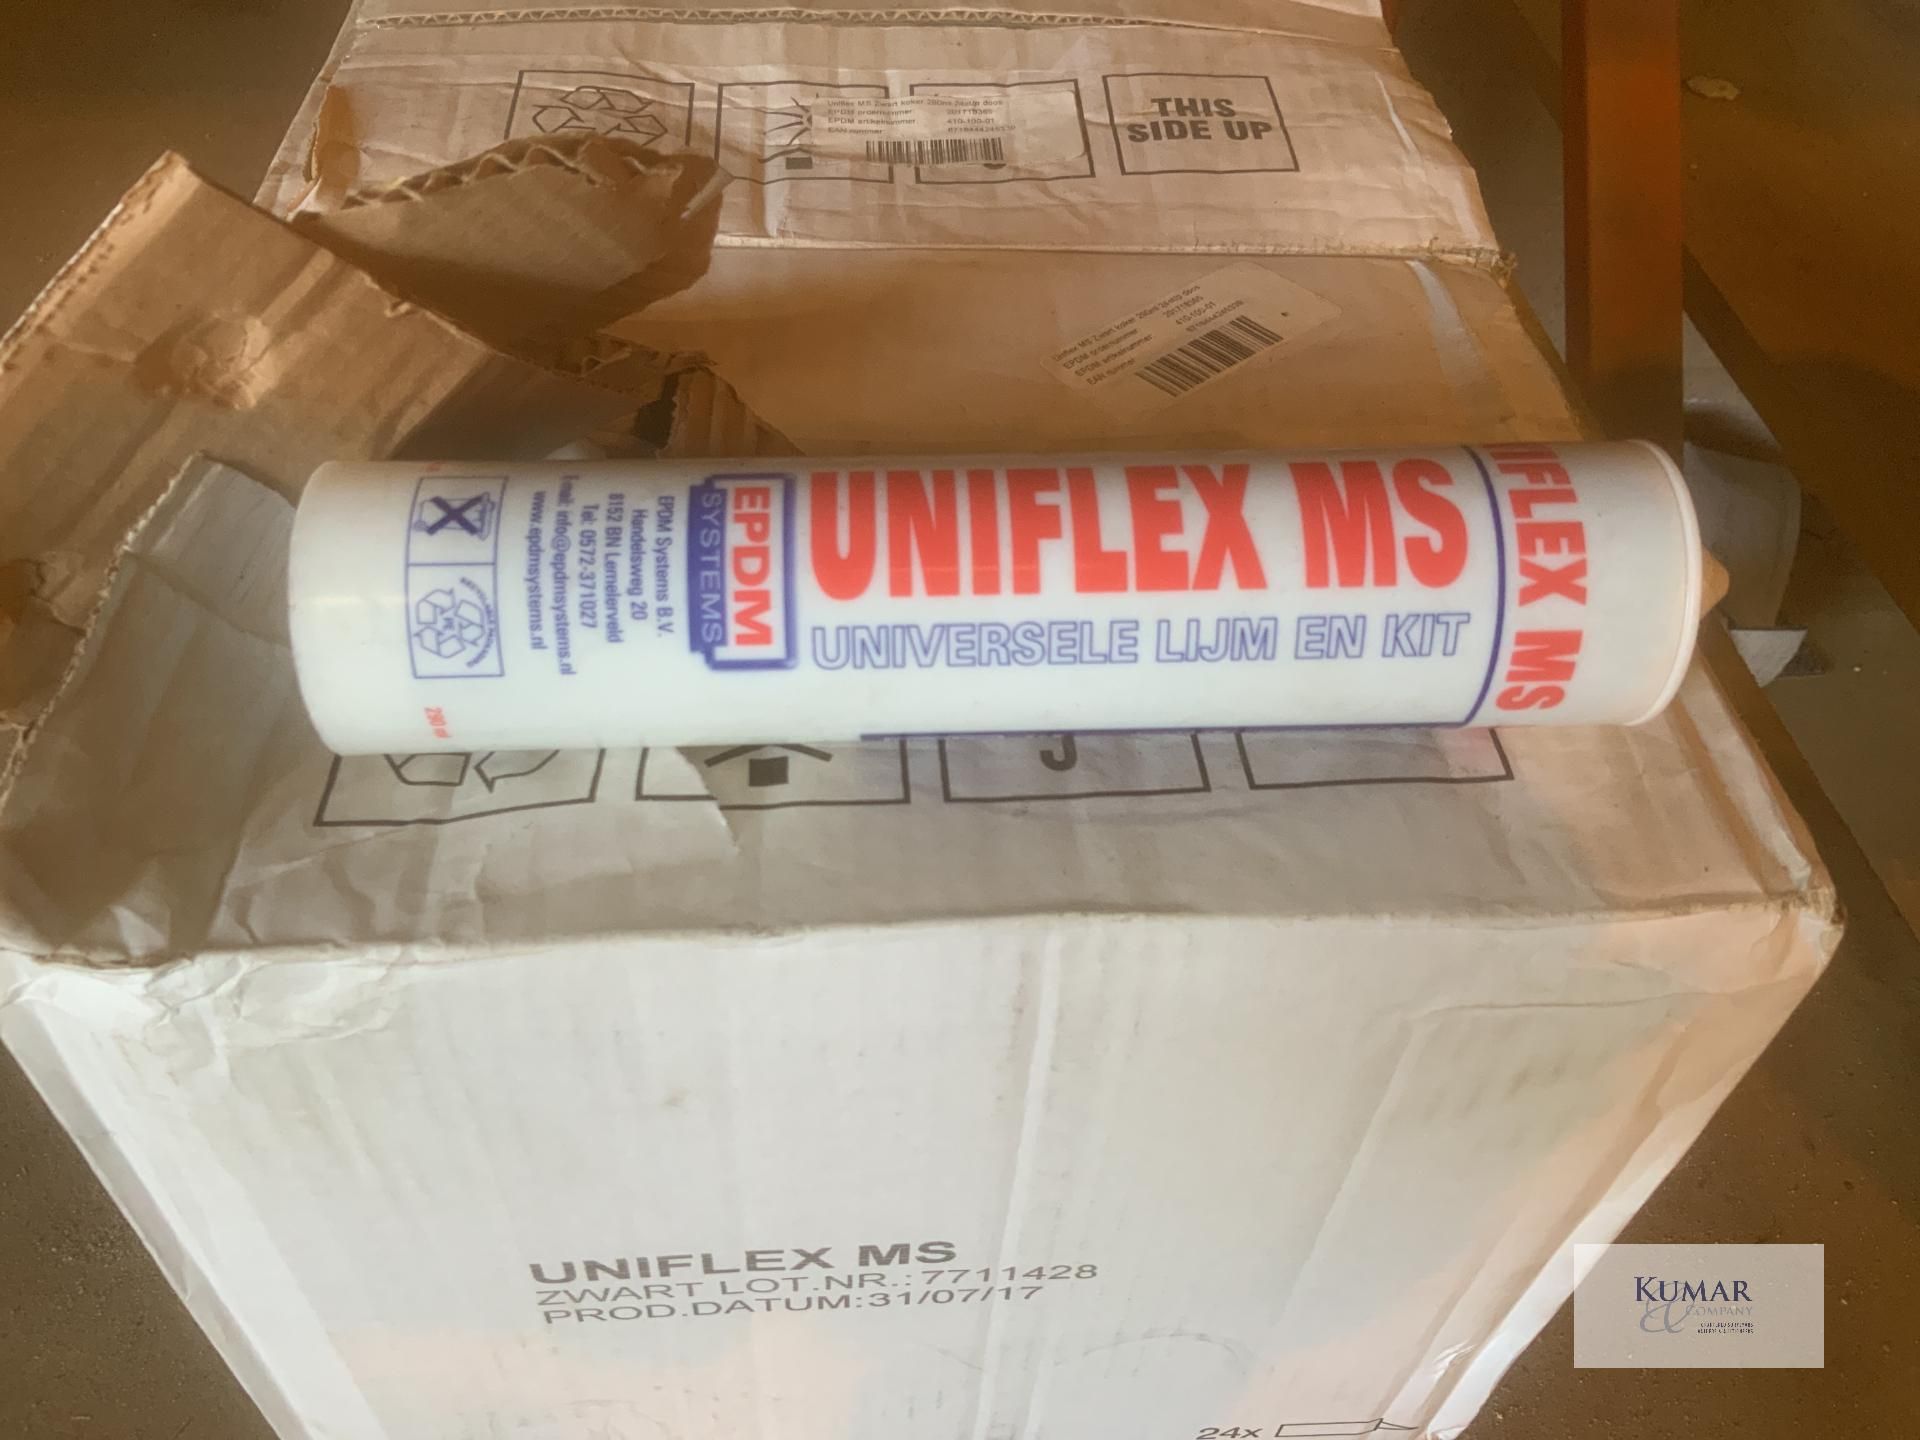 Uniflex M S : 3 boxes : 24 each box - Image 3 of 4